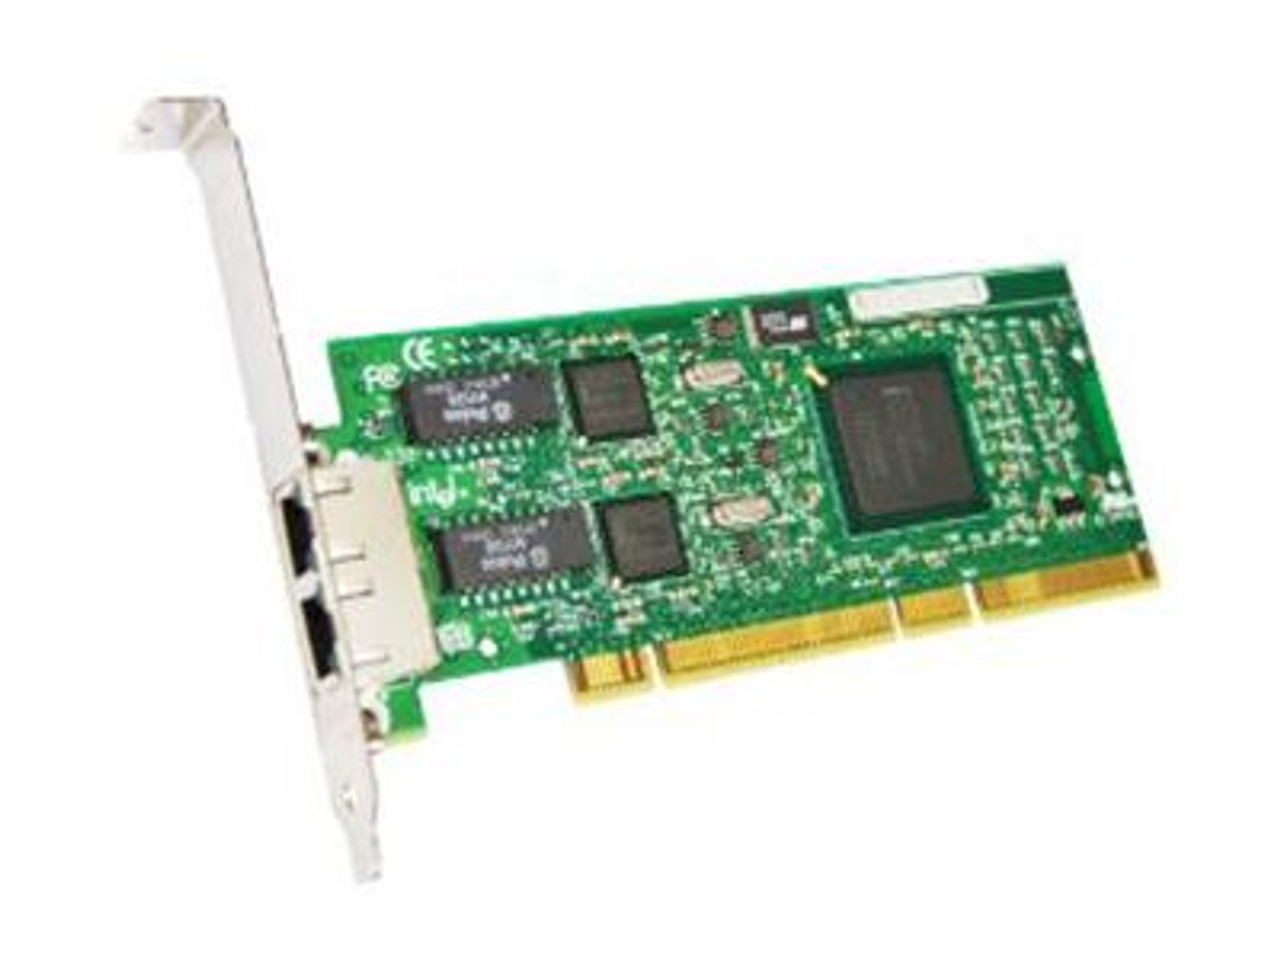 PCB23675-003I Intel PRO/1000 MT Quad-Ports RJ-45 1Gbps 10Base-T/100Base-TX/1000Base-T Gigabit Ethernet PCI-X Server Network Adapter